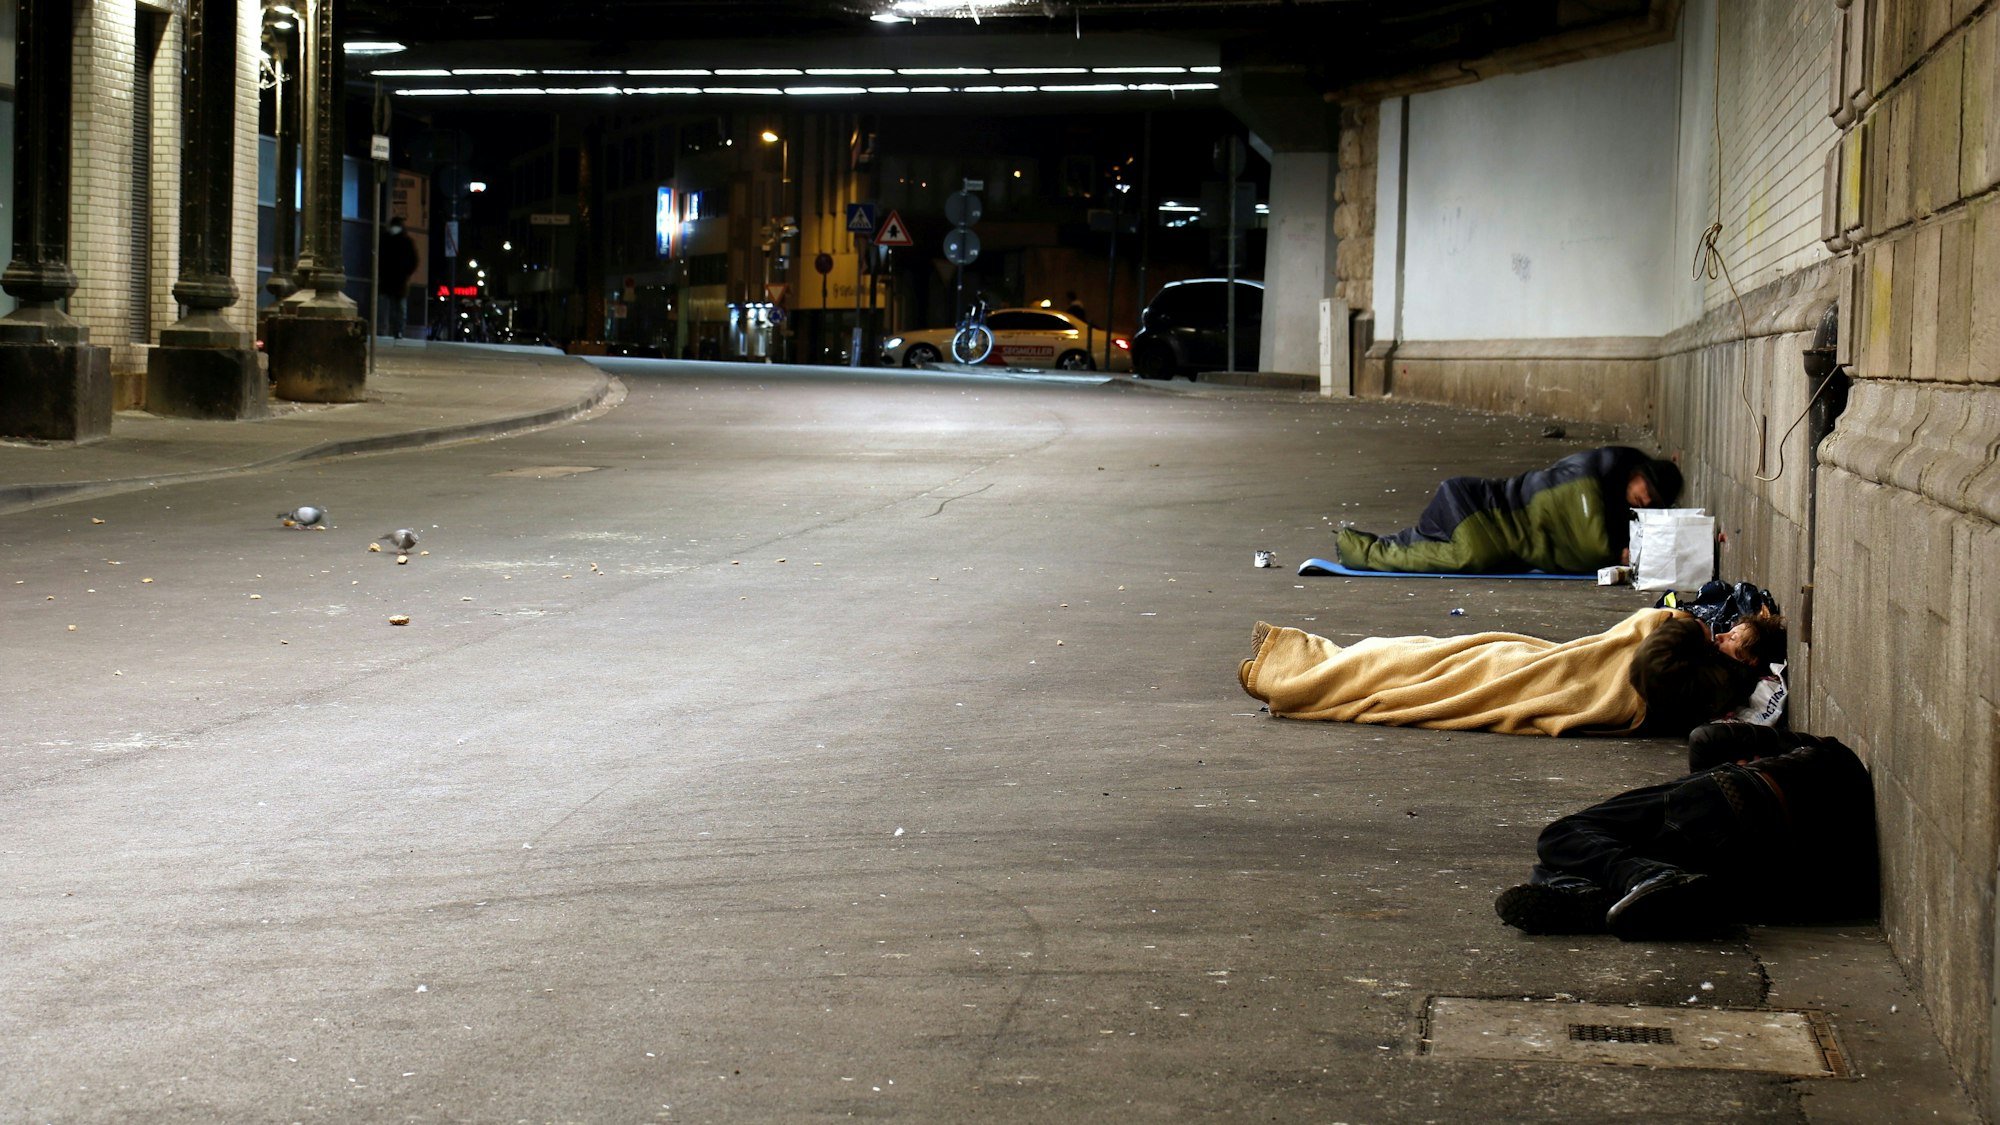 Obdachlose schlafen in der Nähe des Hauptbahnhofs in einer Unterführung um sich vor der kälte zu schützen. Gut 6000 Menschen gelten in Köln als obdachlos.